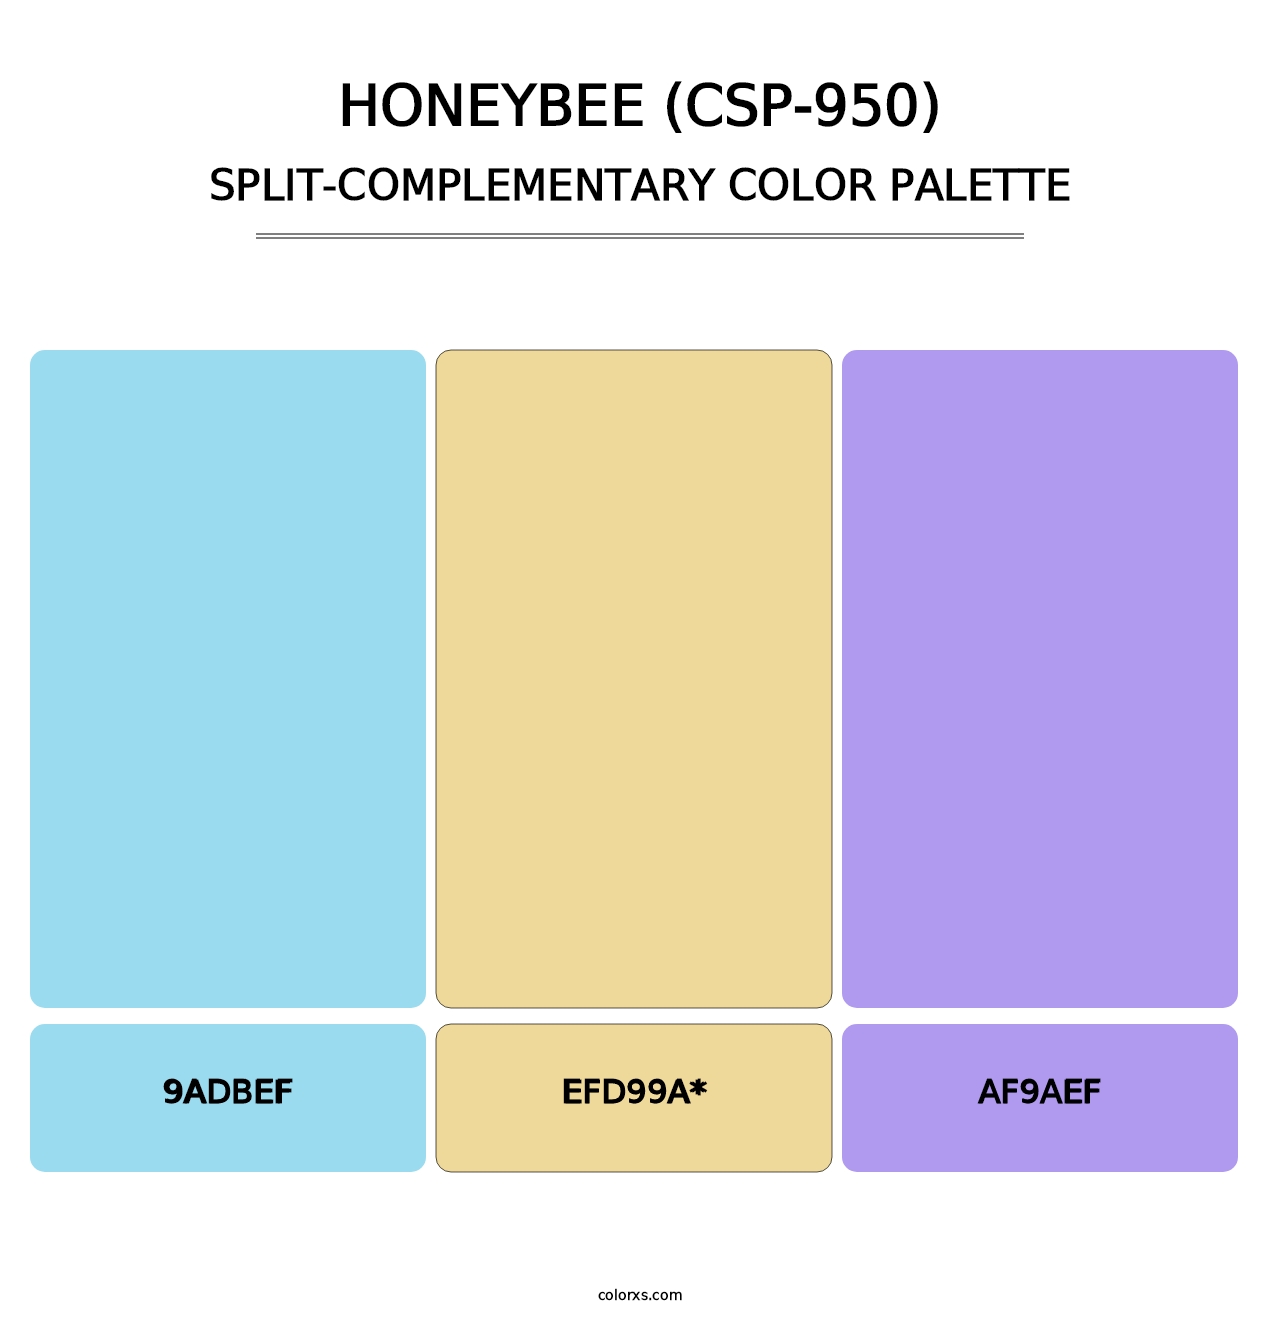 Honeybee (CSP-950) - Split-Complementary Color Palette